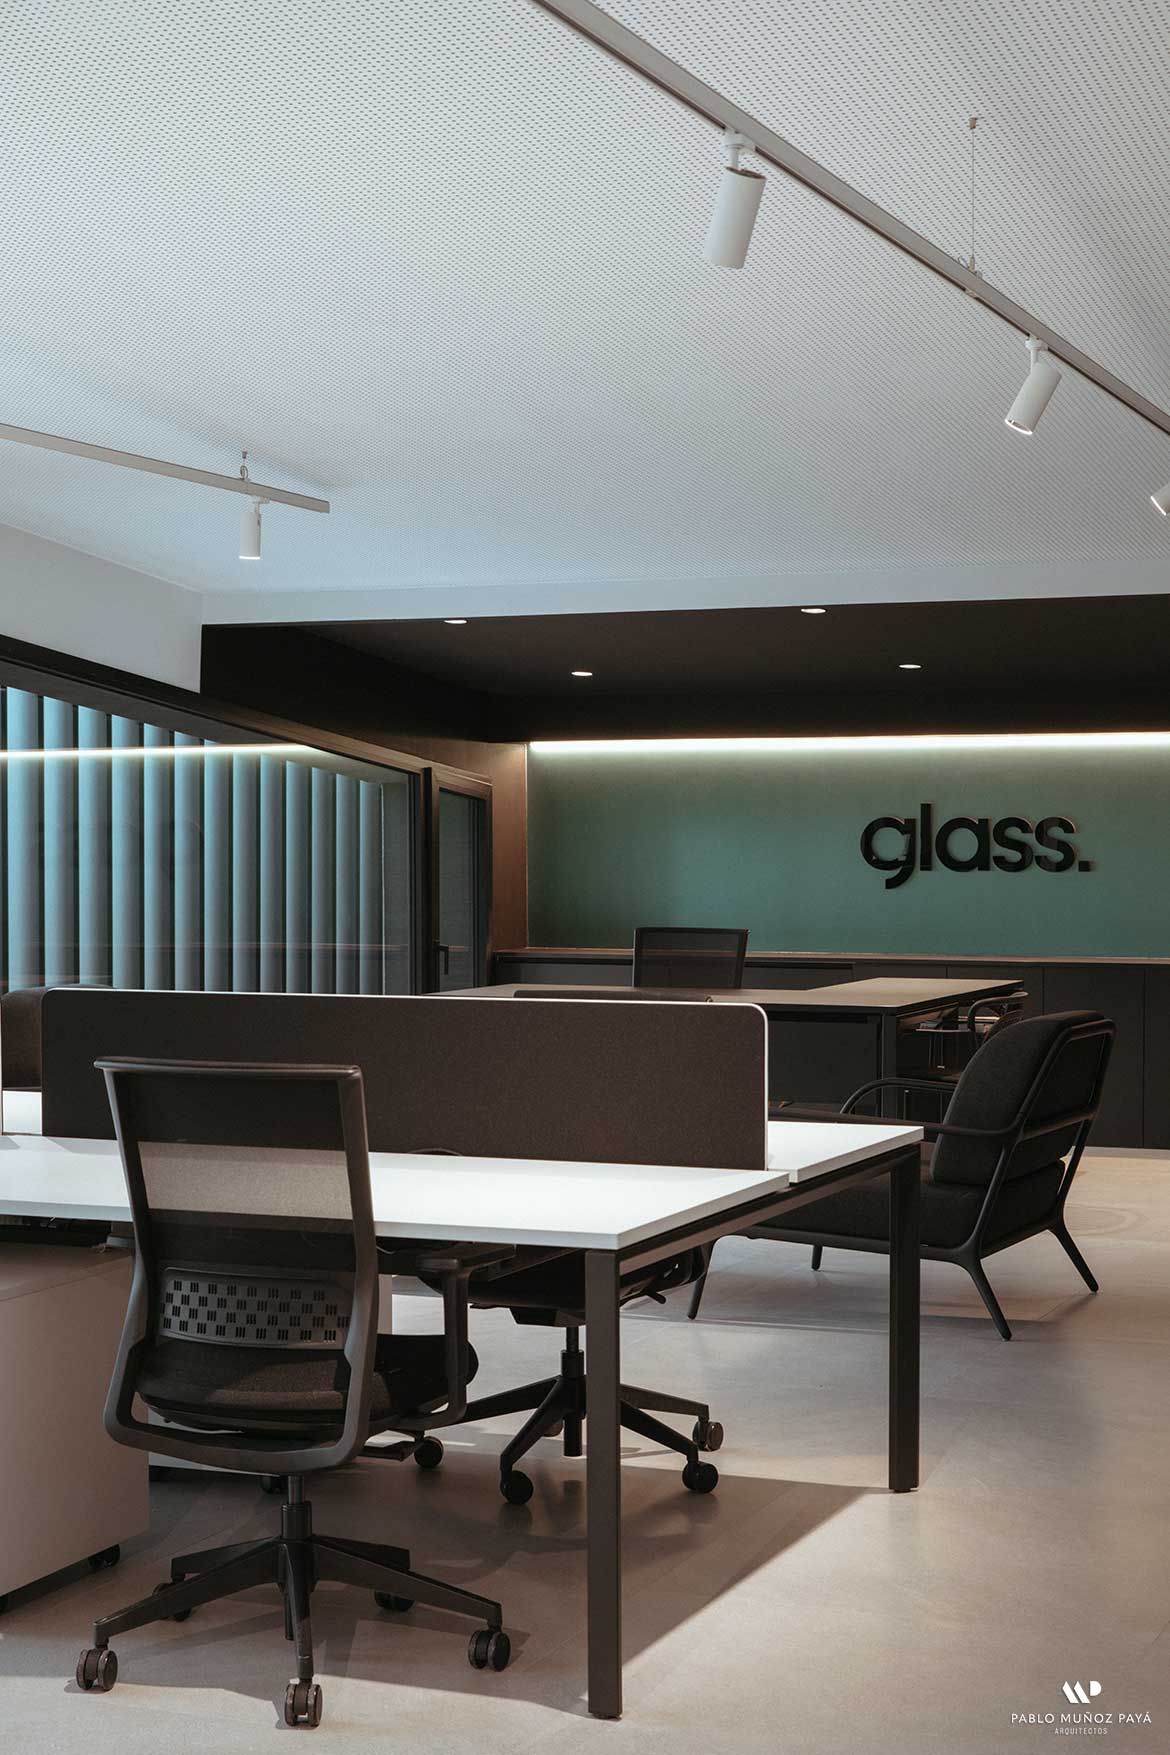 Reforma integral y diseño interior Oficinas GLASS by Gaviota - Pablo Muñoz Payá Arquitectos 24